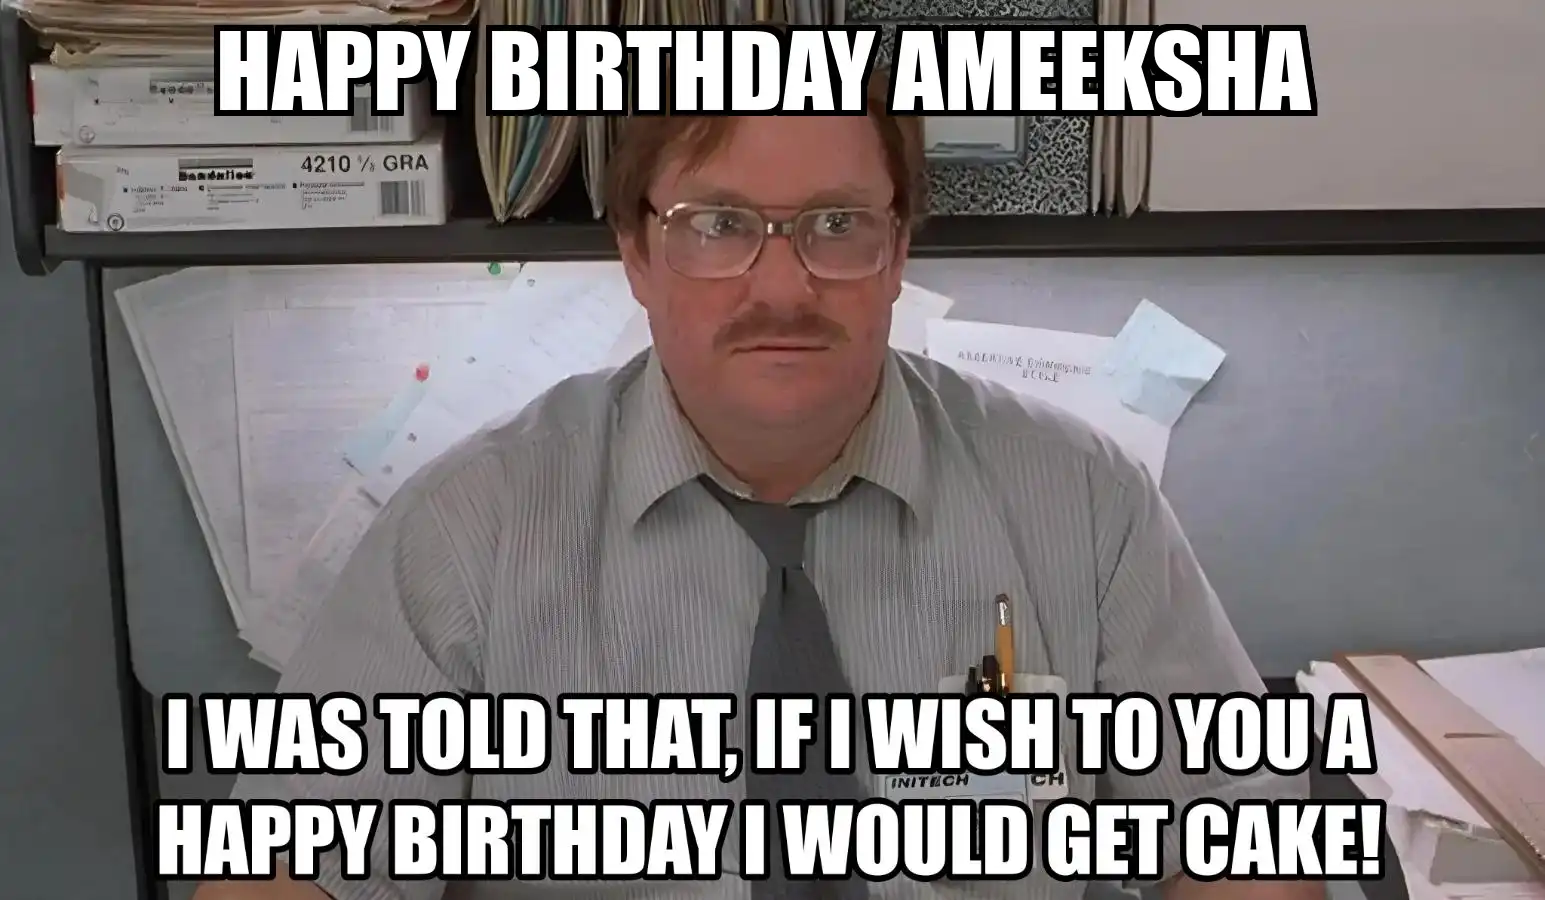 Happy Birthday Ameeksha I Would Get A Cake Meme